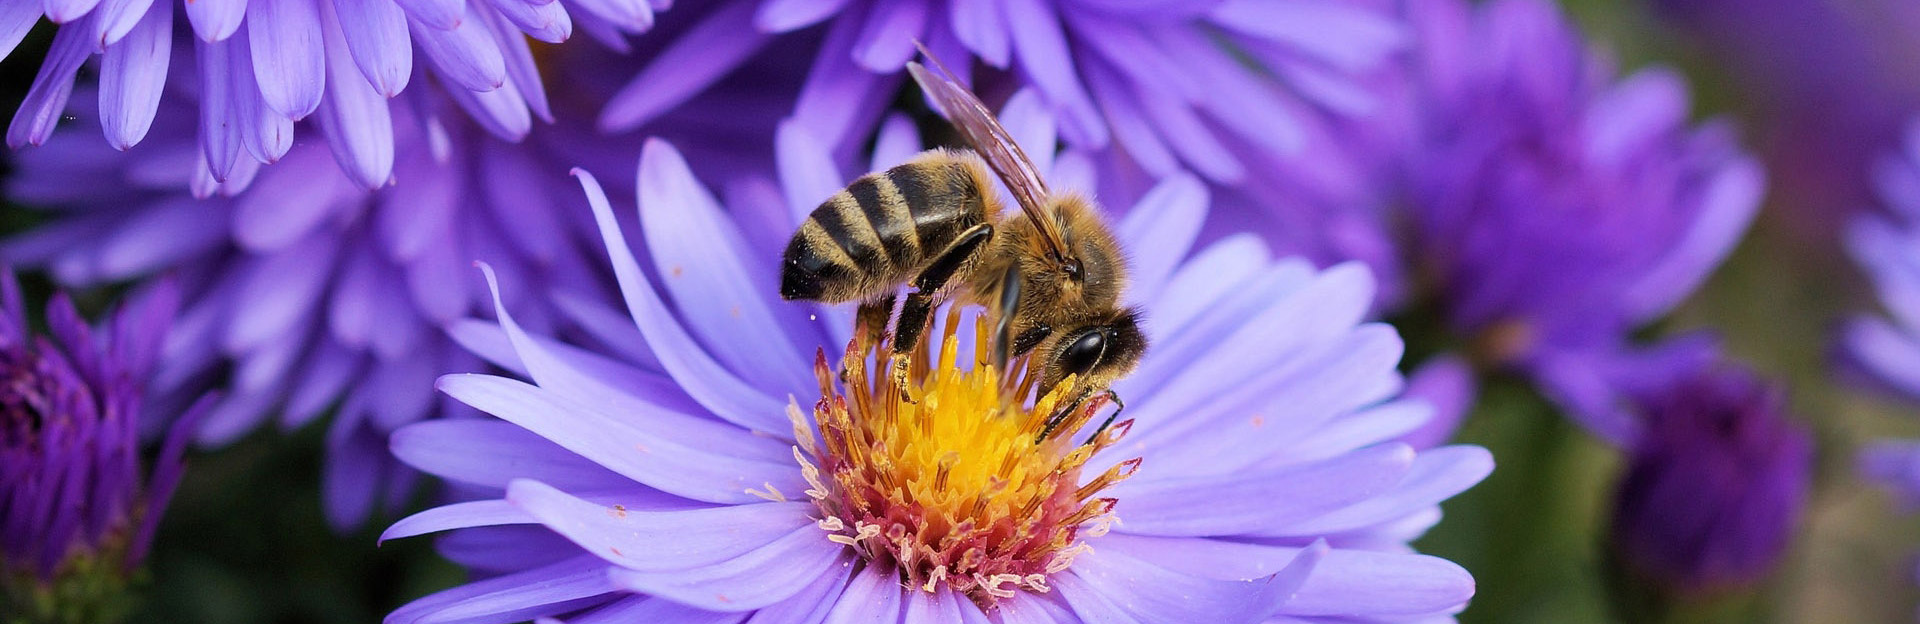 Bee On Purple Flower Source Pexel Com Bees